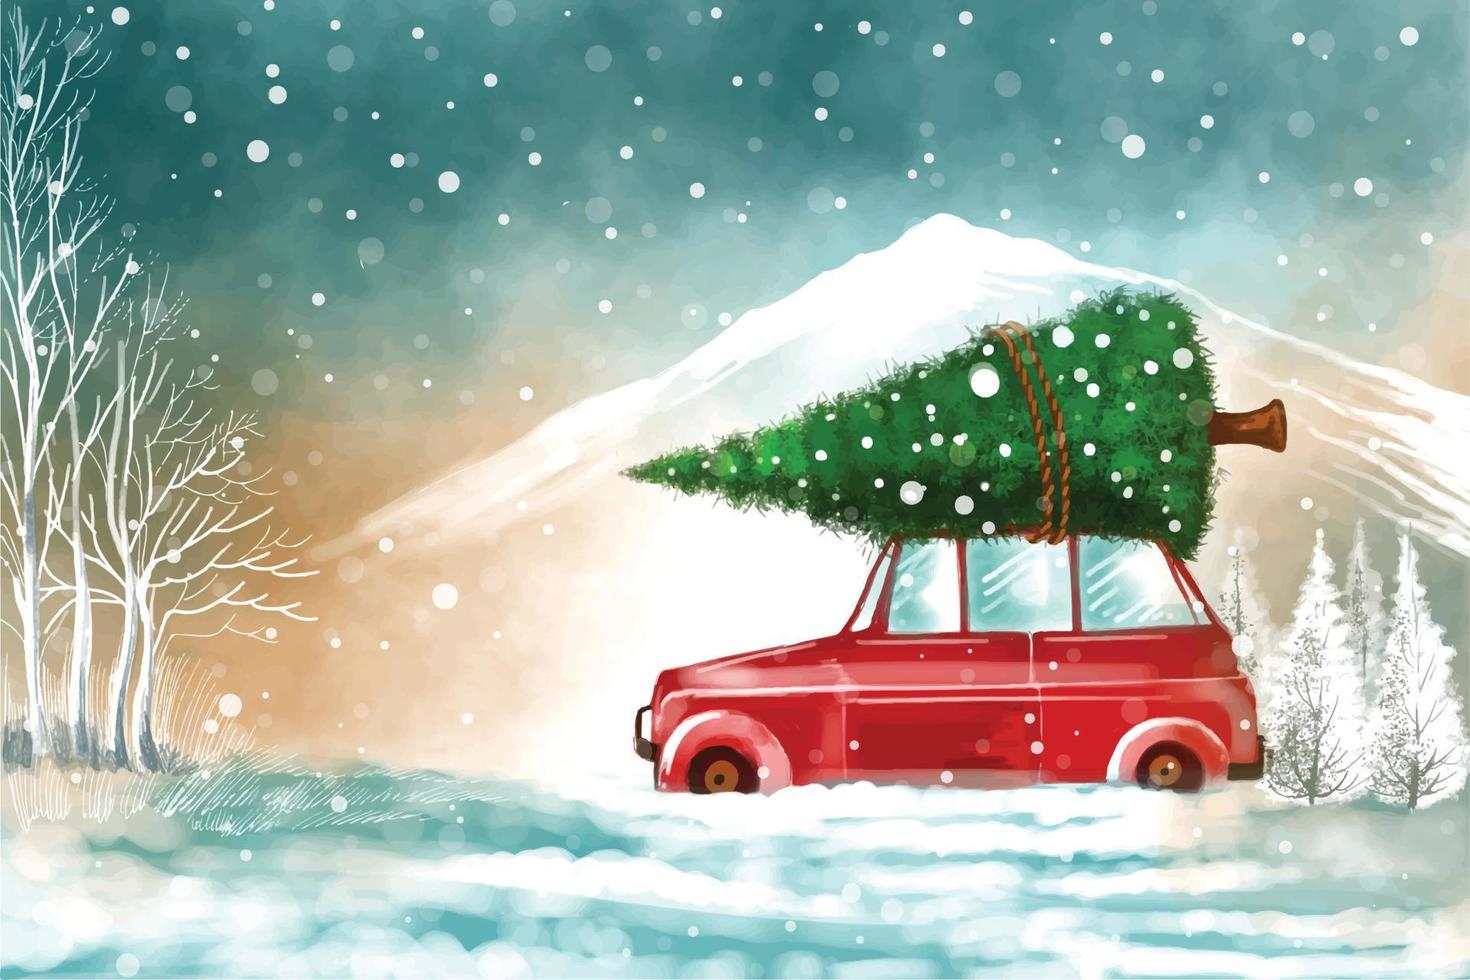 paisagem de inverno elegante com carro no fundo da árvore de natal nevado vetor